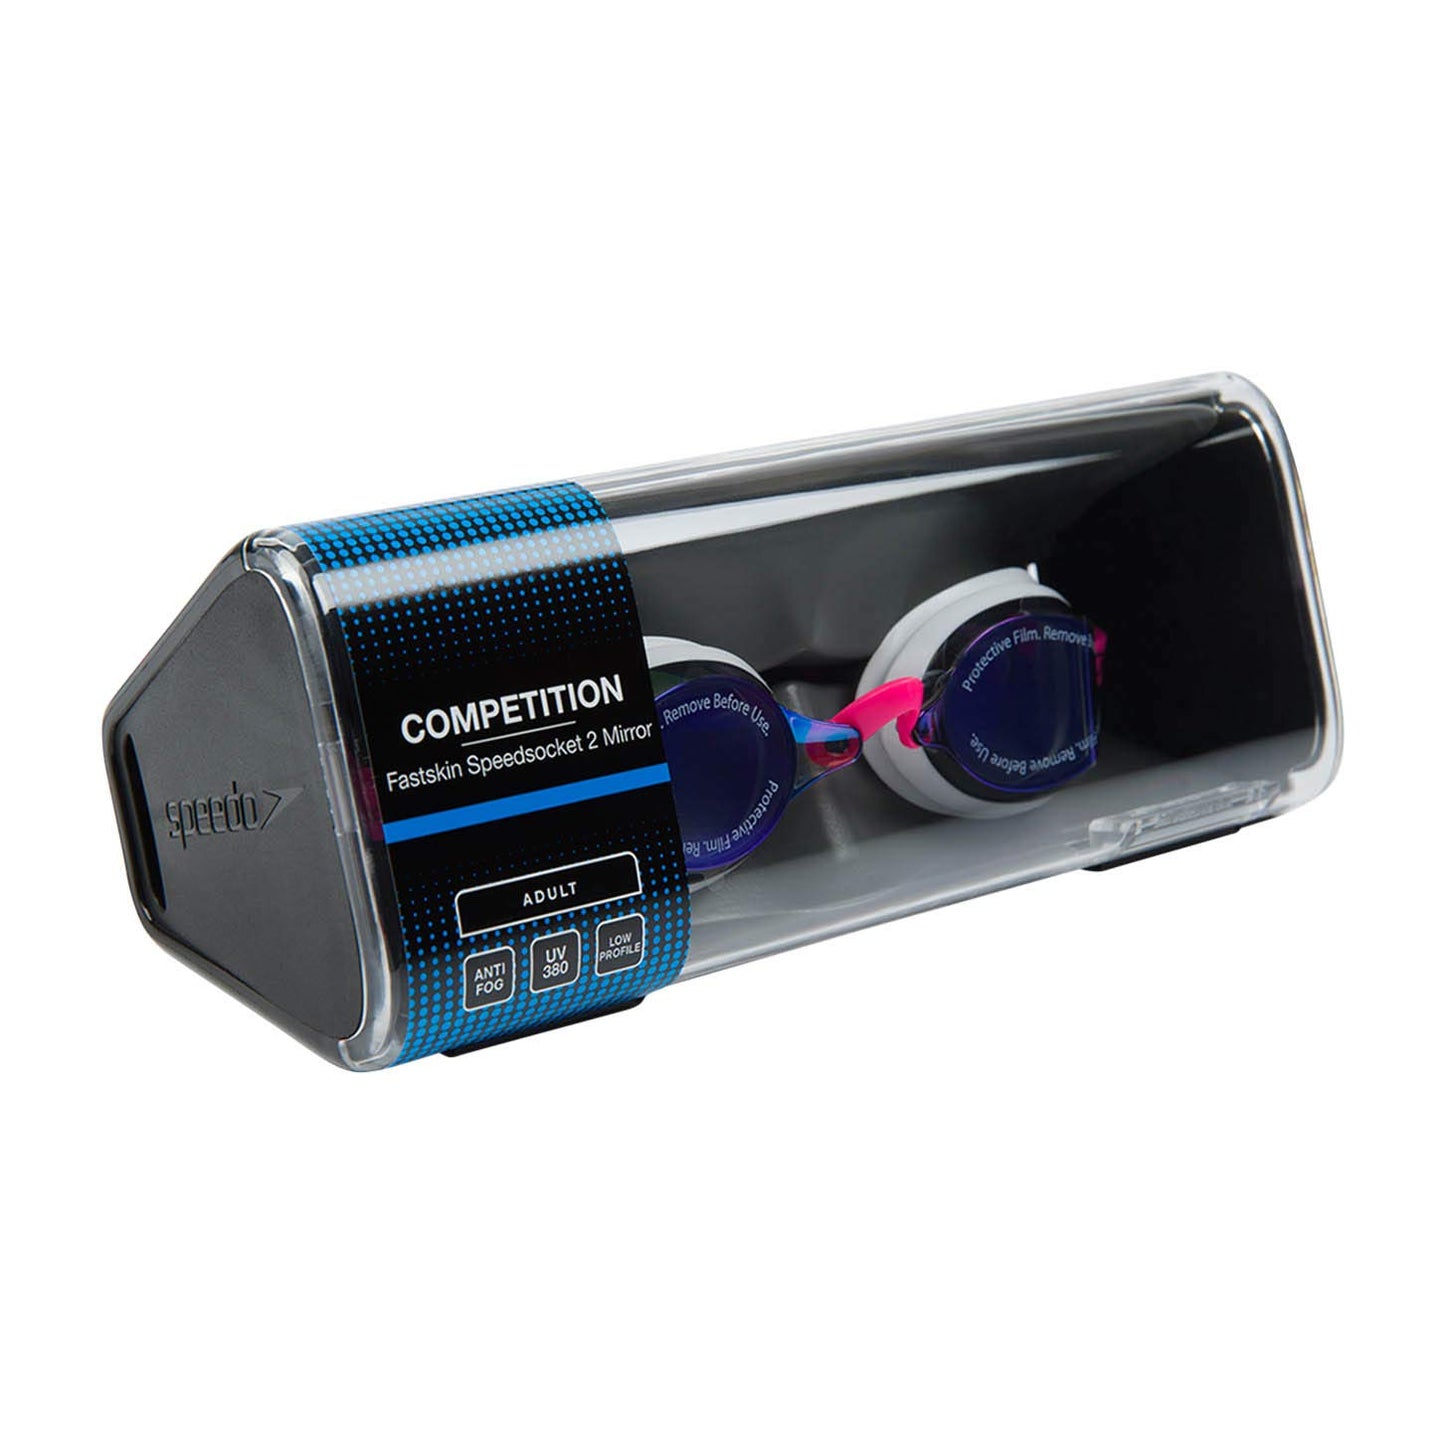 Speedo SpeedSocket 2 Mirror Goggle - Pink/Blue - Best Price online Prokicksports.com